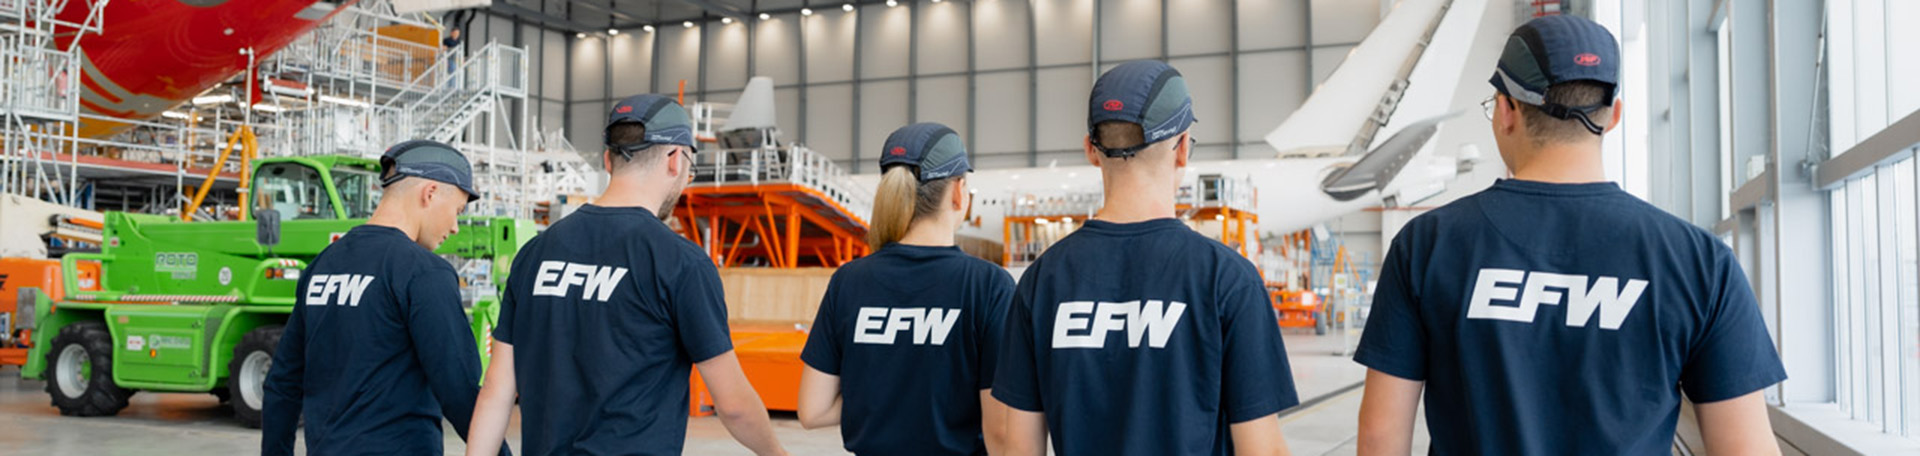 efw.aero Elbe Flugzeukwerke_Jobs Headerbild Karriere Ausbildung_26